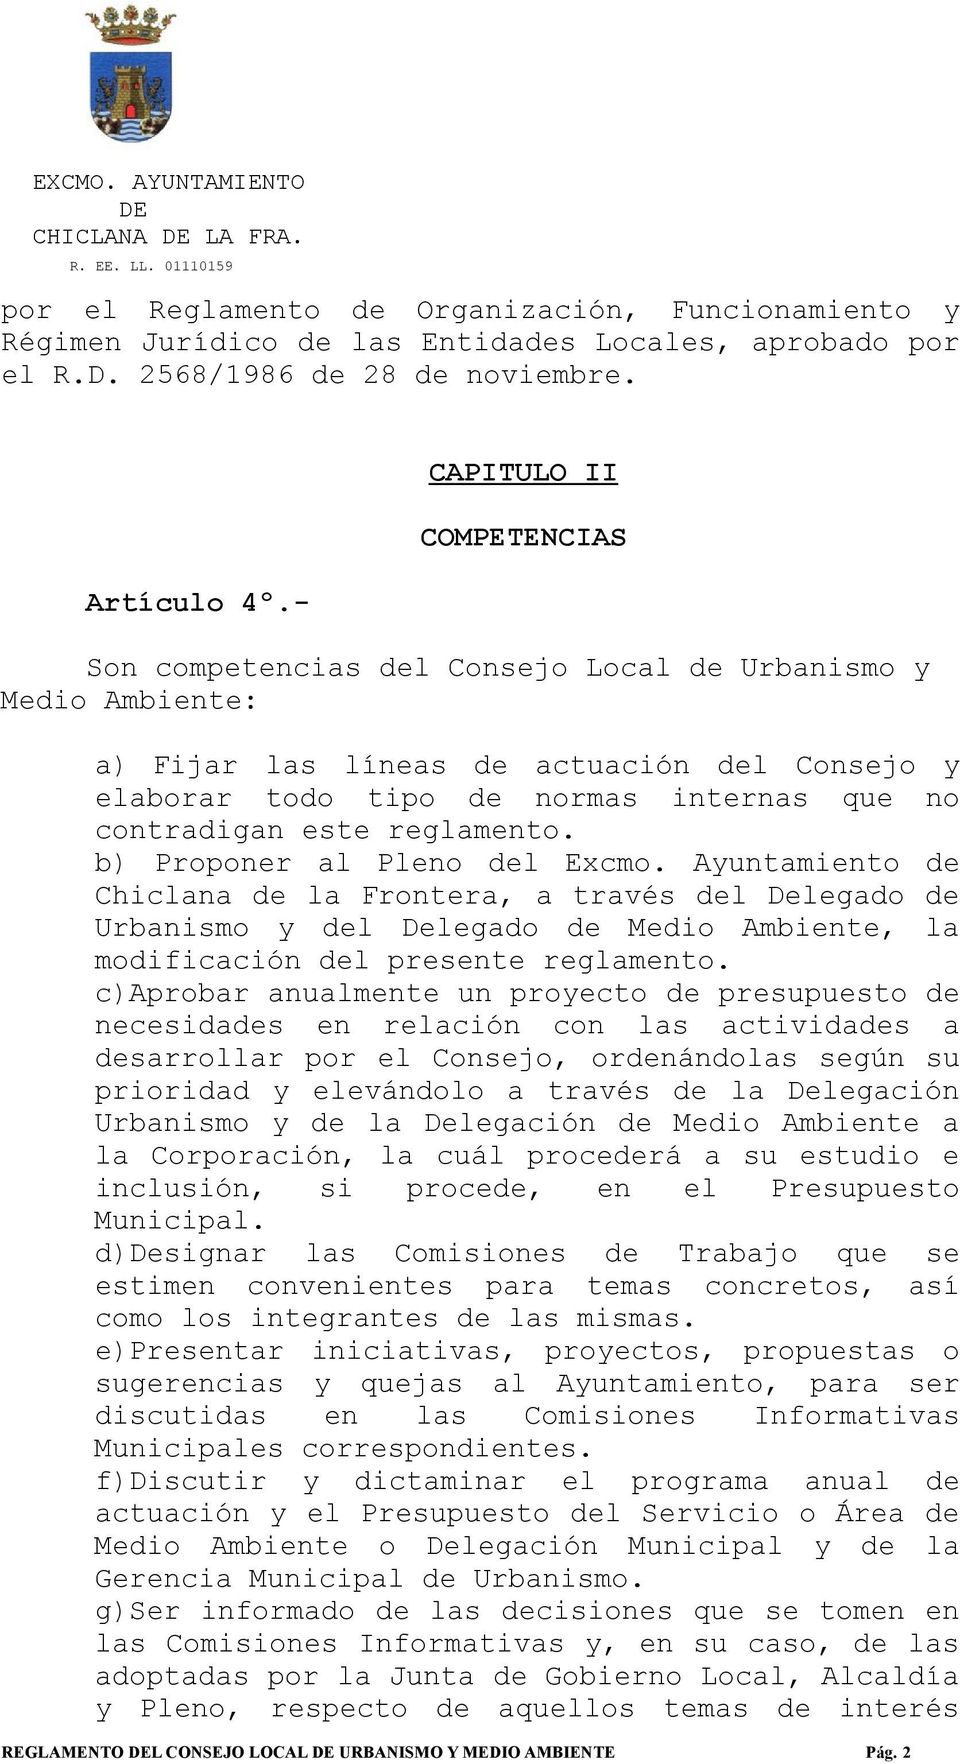 este reglamento. b) Proponer al Pleno del Excmo. Ayuntamiento de Chiclana de la Frontera, a través del Delegado de Urbanismo y del Delegado de Medio Ambiente, la modificación del presente reglamento.